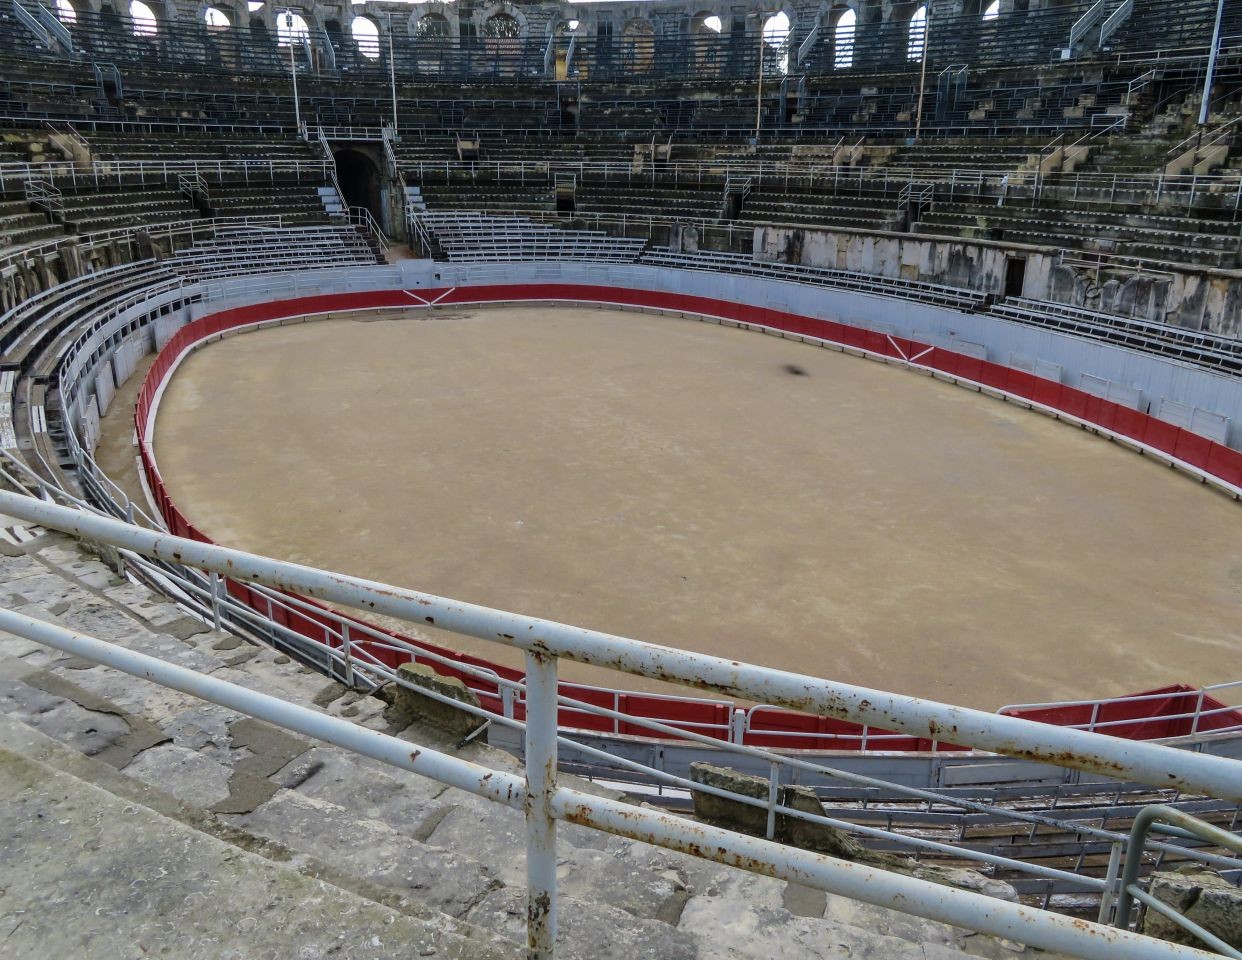 Roman Arena